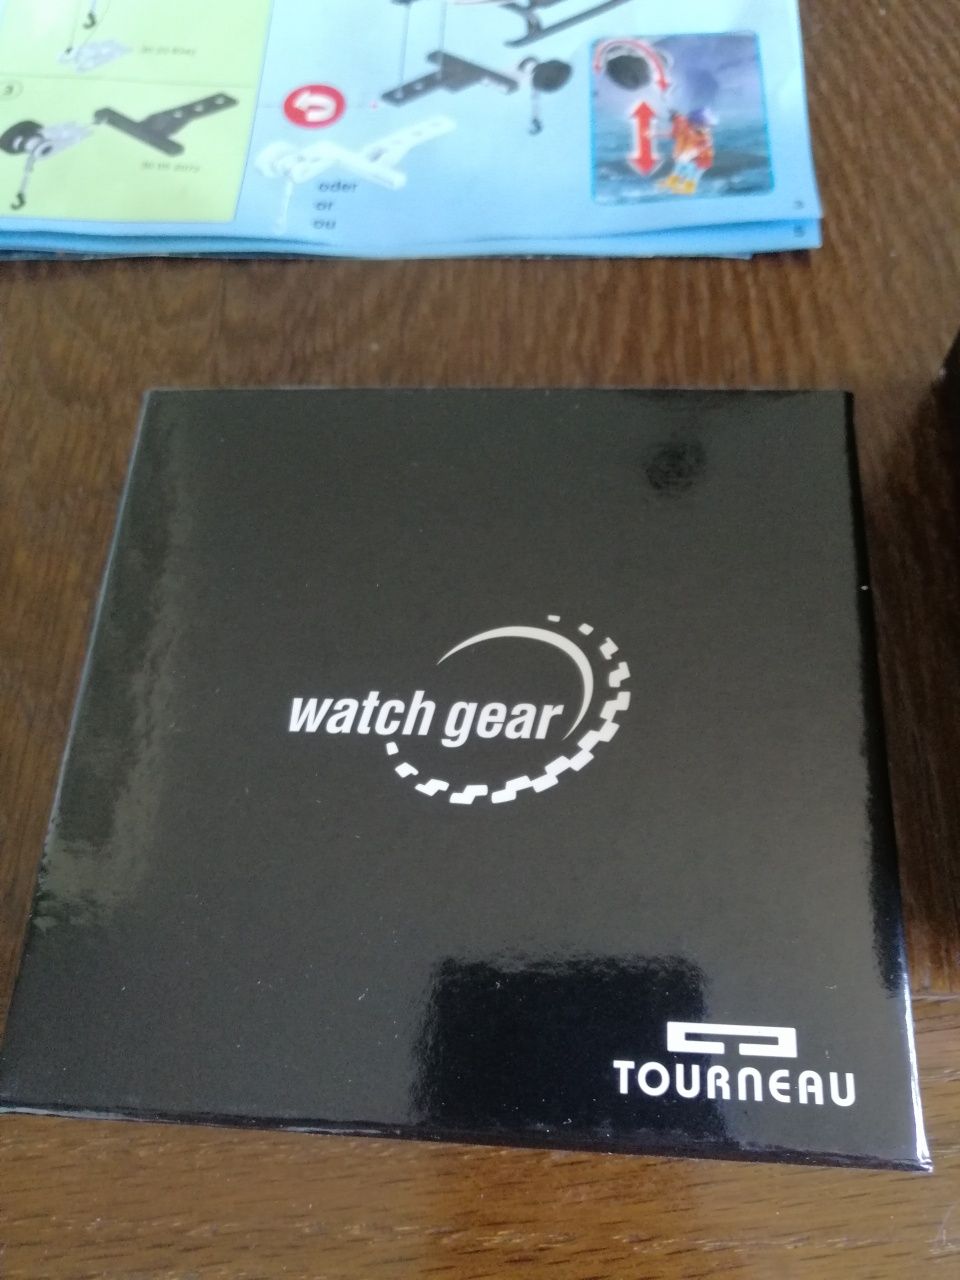 Zegarek Watch Gear Tourneau